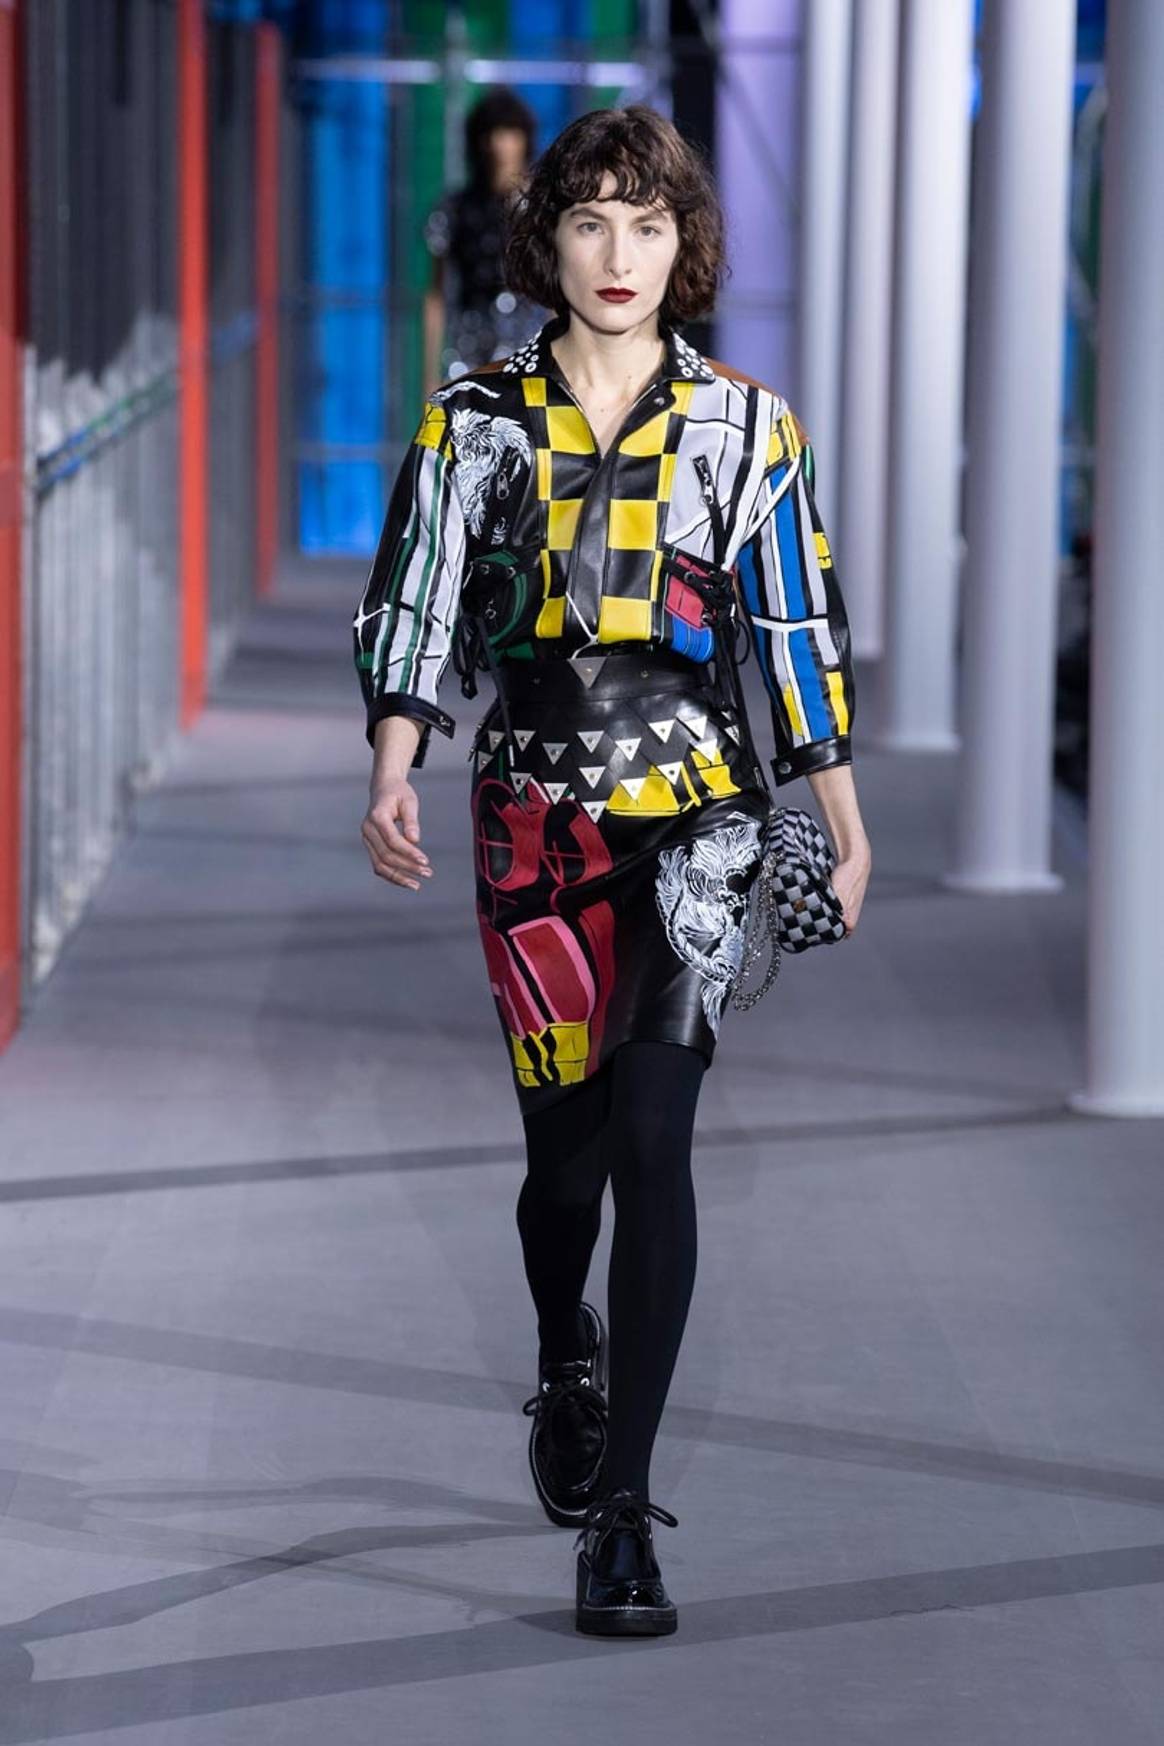 Mezcla de colores e inspiración pop en la última colección de Louis Vuitton